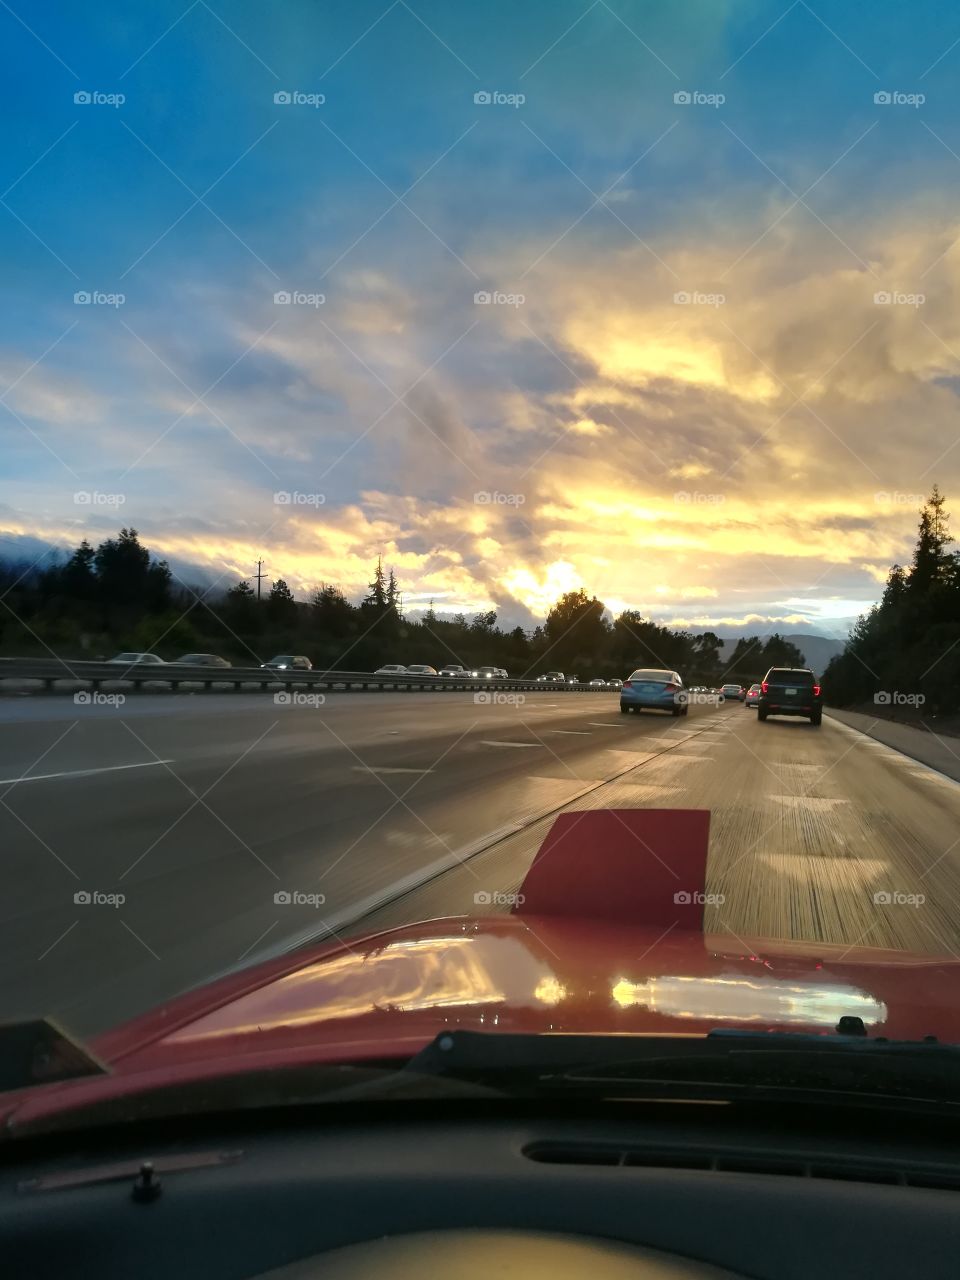 San Jose Sunset